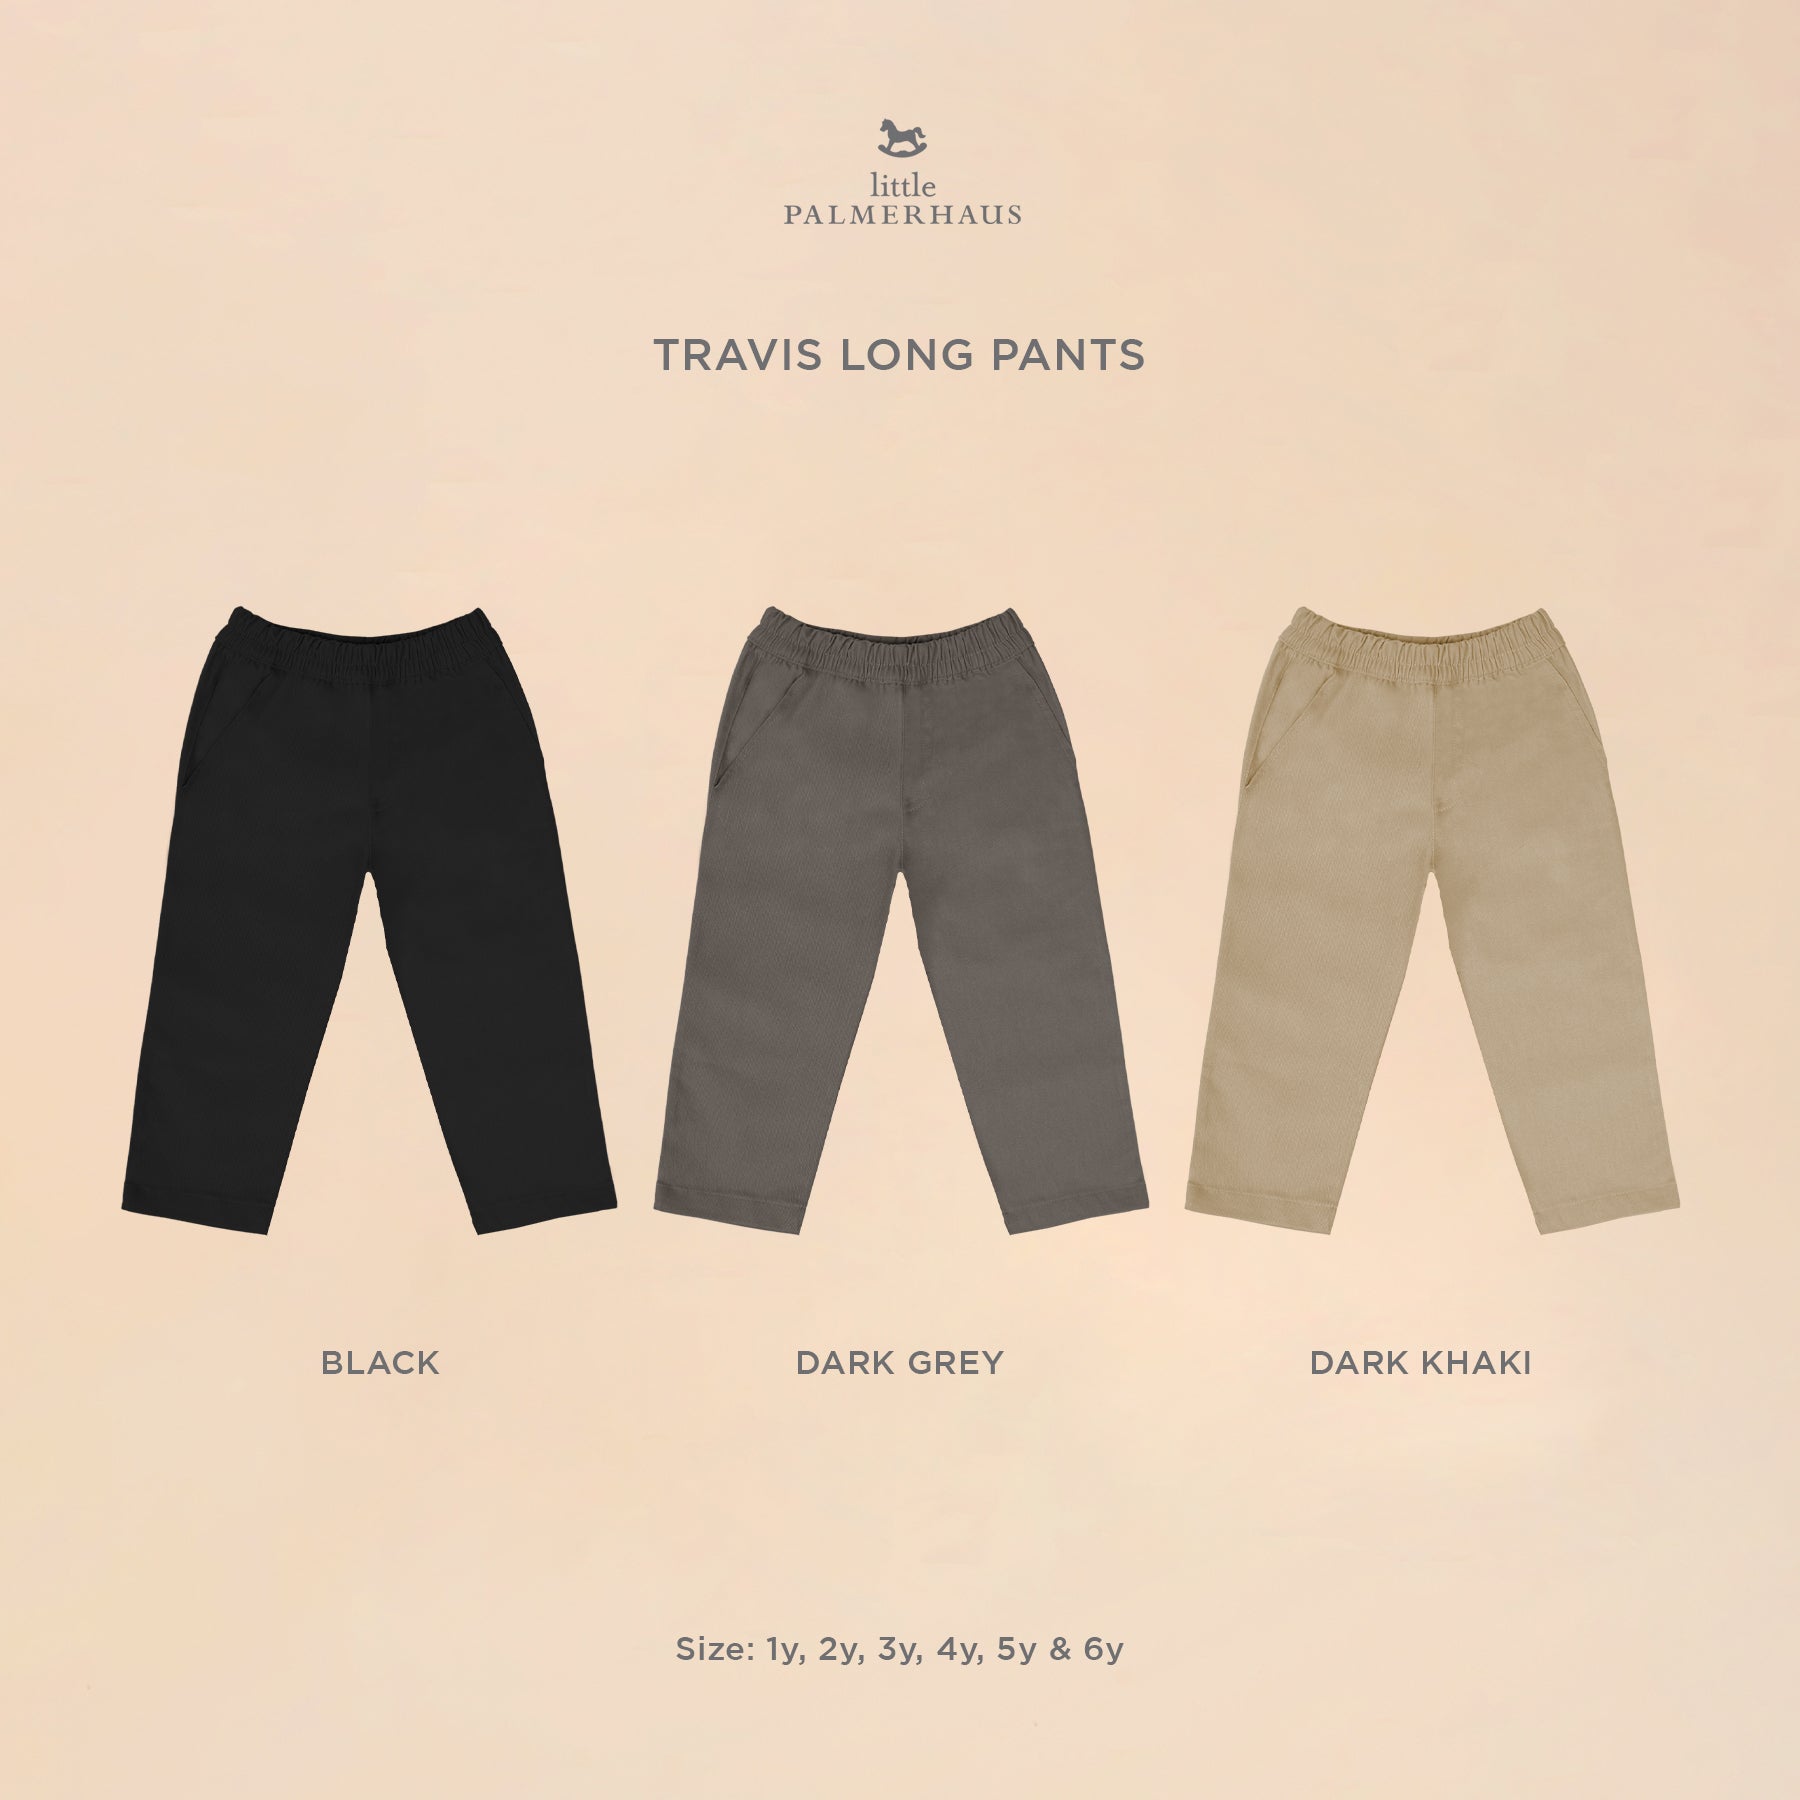 Travis Long Pants